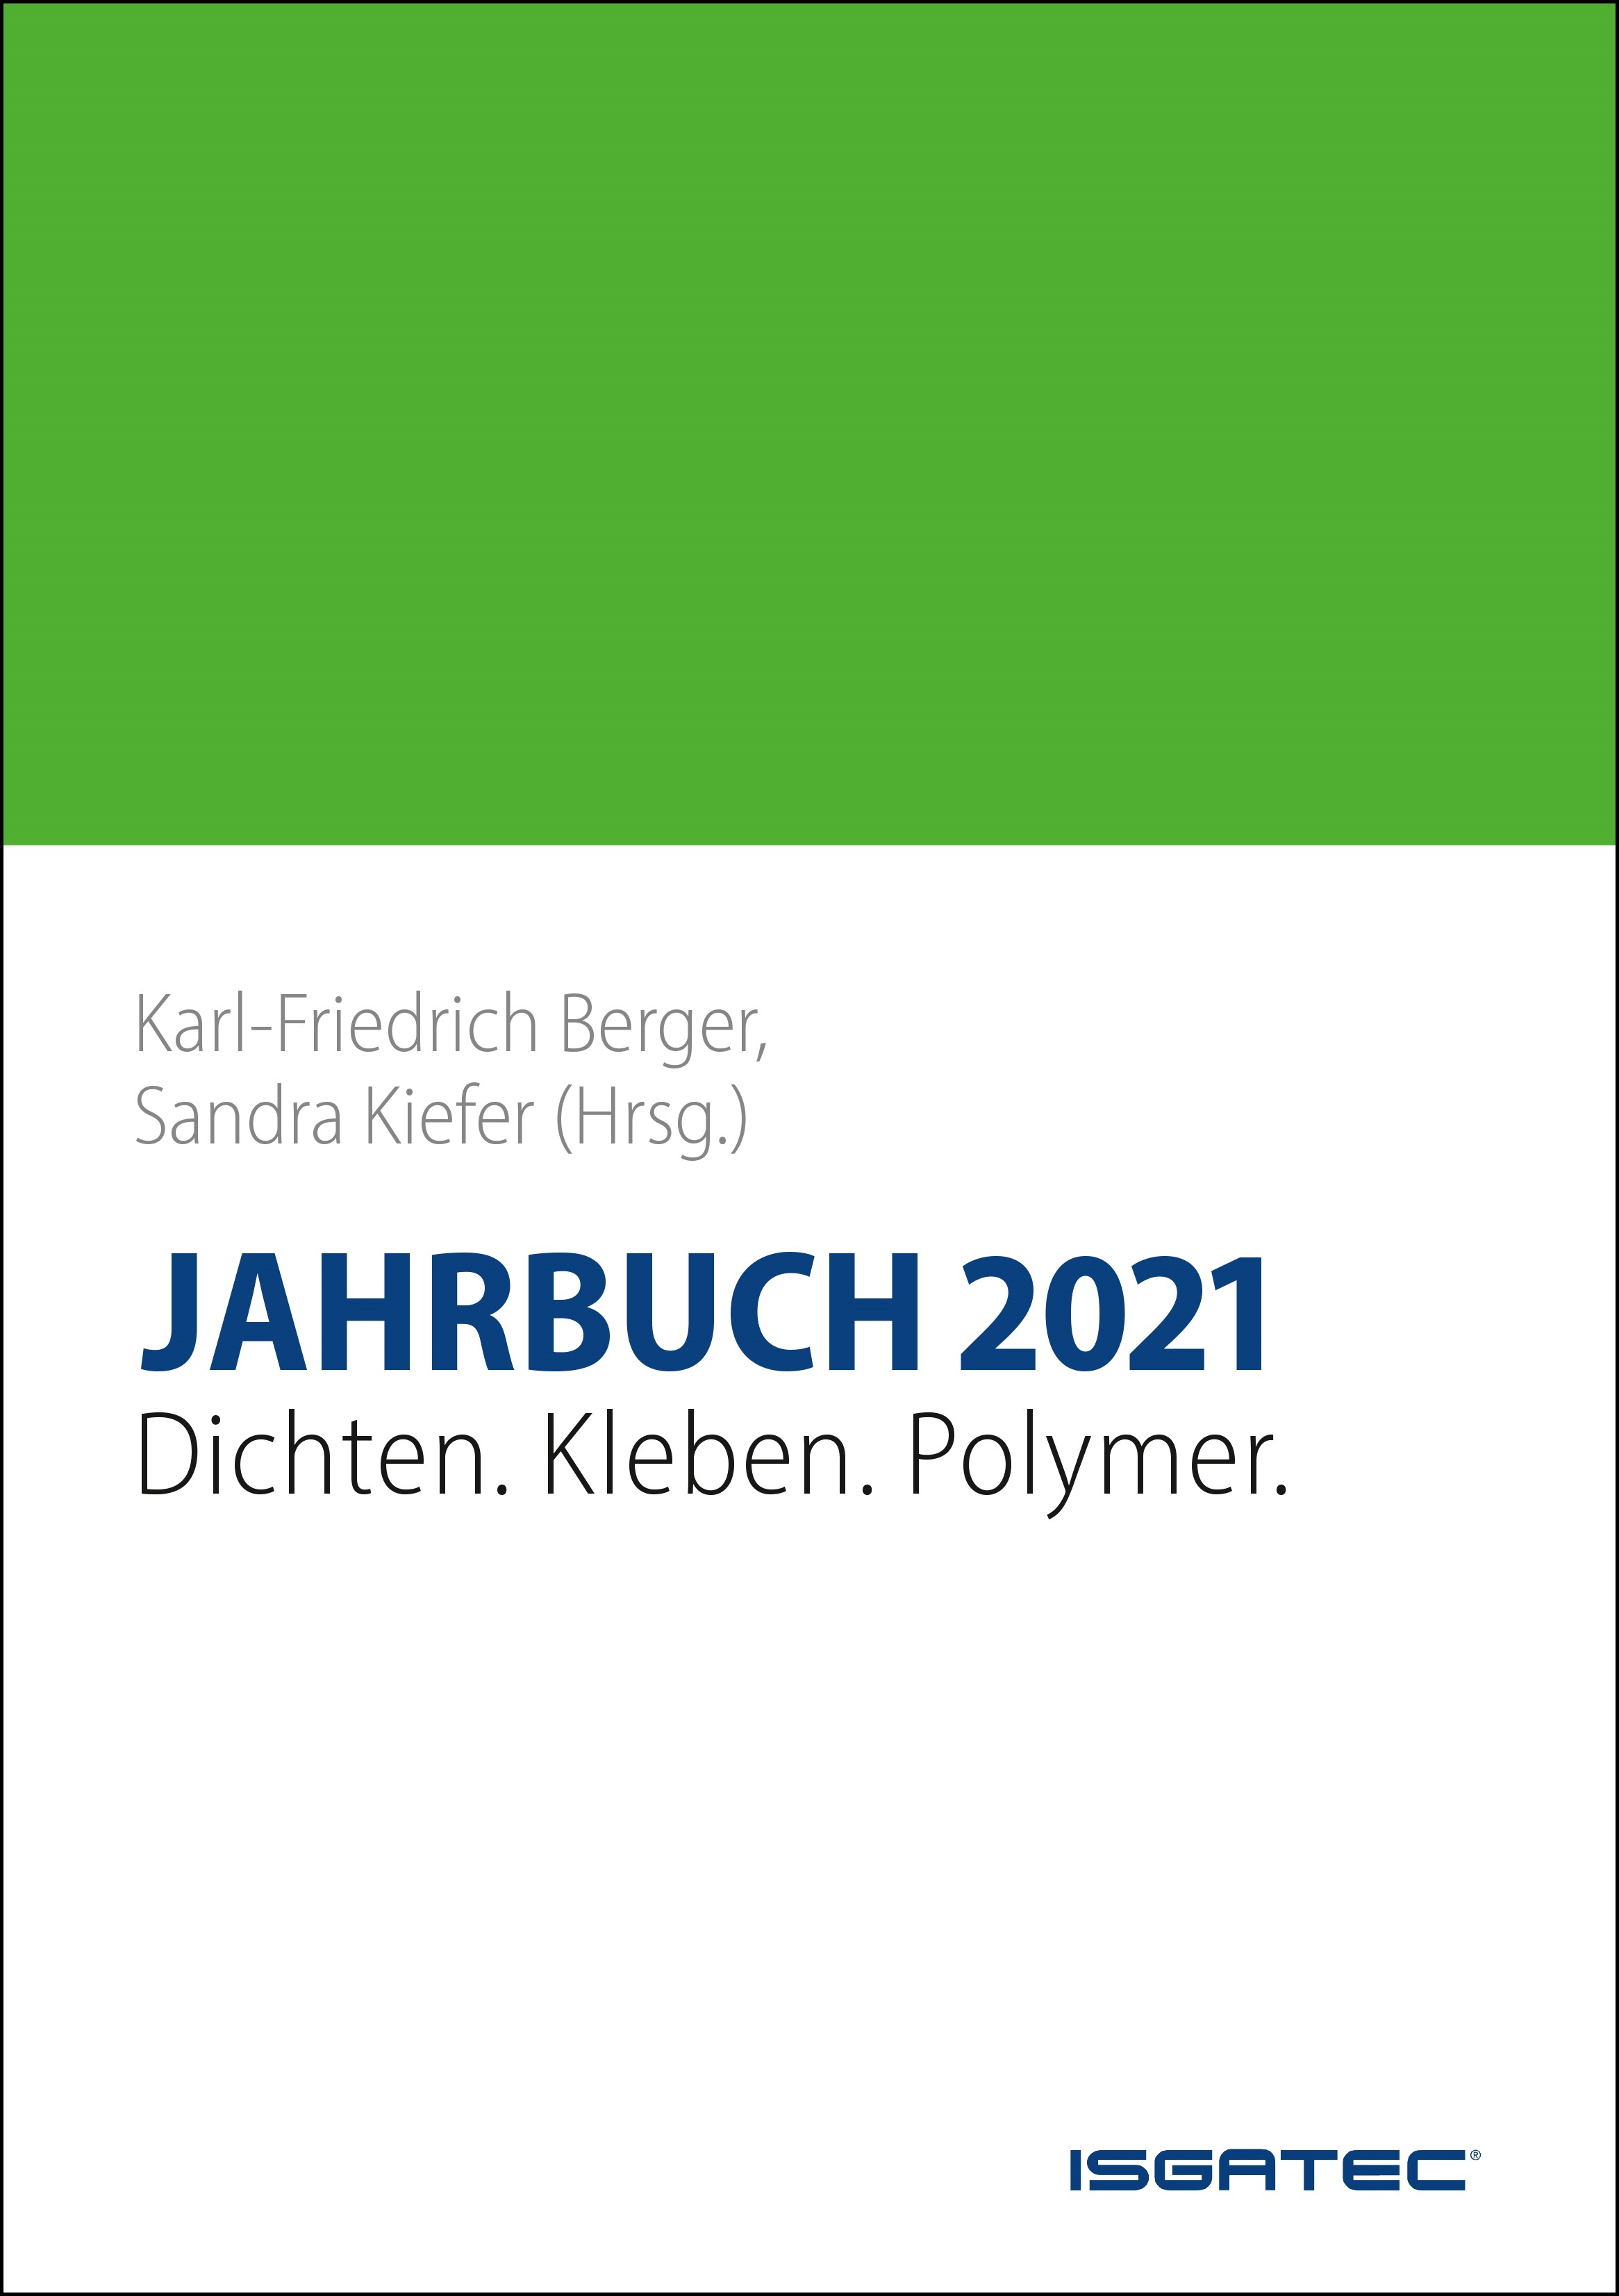  JAHRBUCH Dichten. Kleben. Polymer. 2021